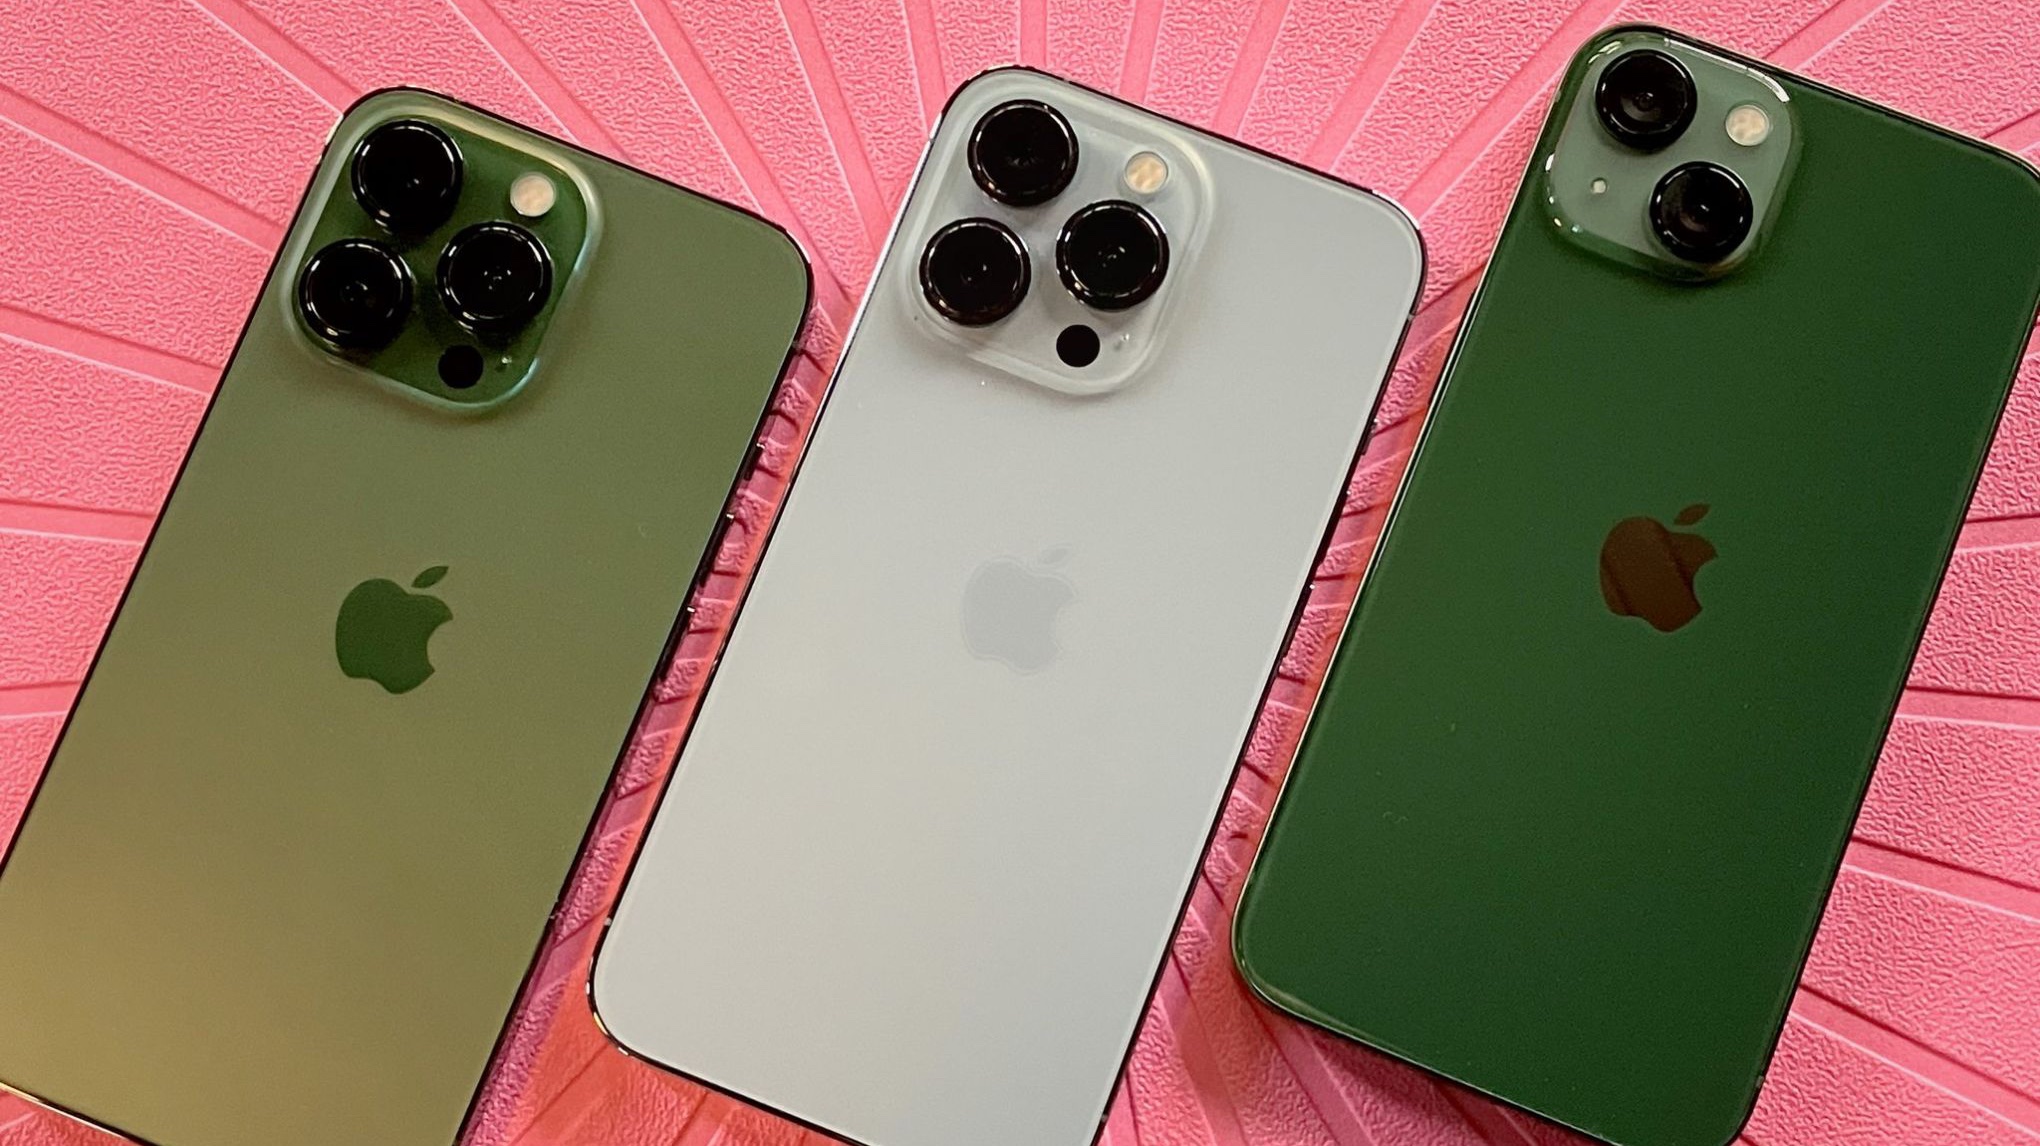 Alpine Green iPhone 13 Pro, Sierra Blue iPhone 13 Pro, iPhone 13 hijau menghadap ke bawah pada tatakan merah muda dengan tonjolan kamera menghadap ke atas